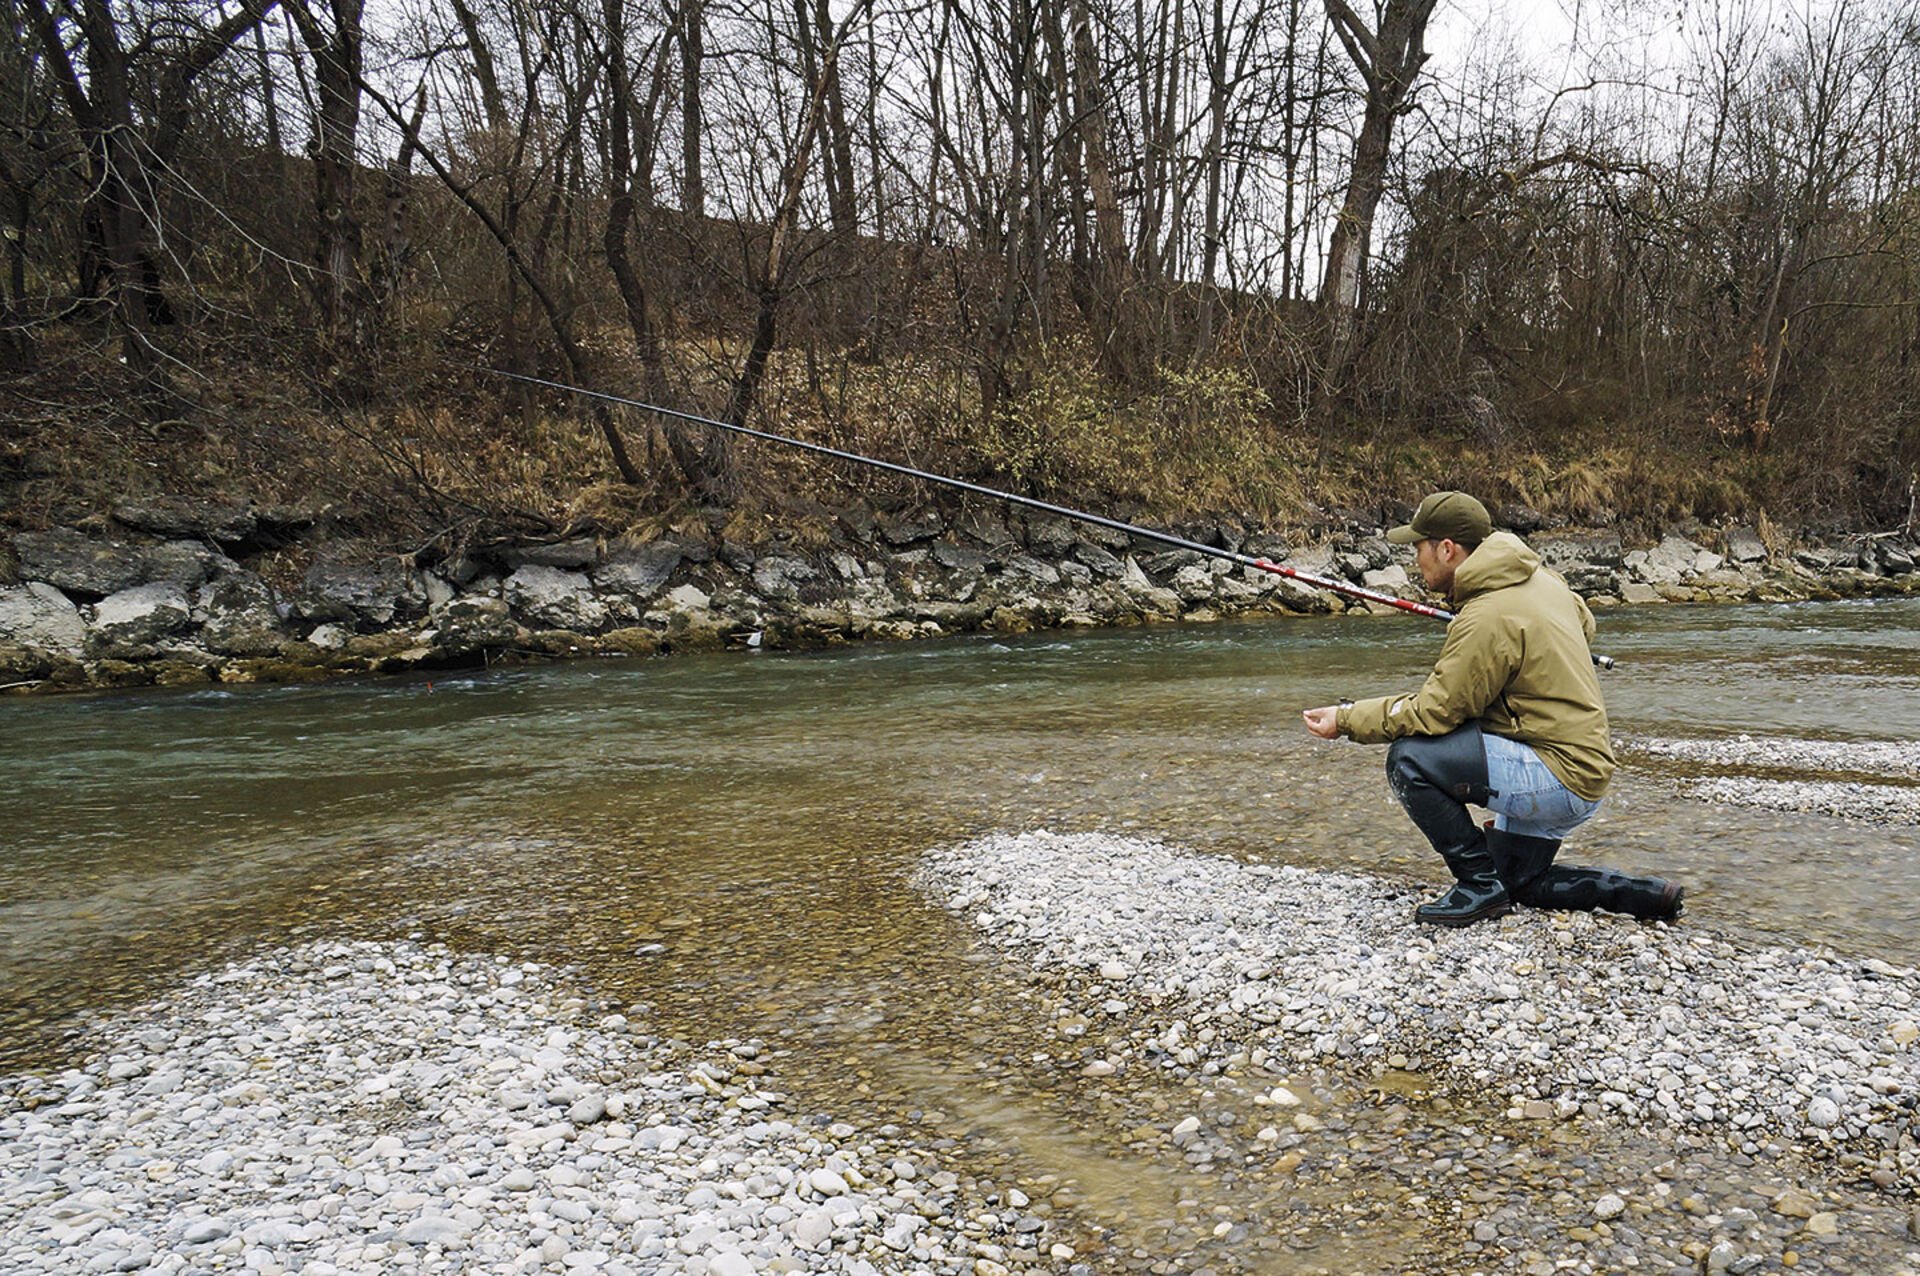  Bei der Forellenpirsch im Frühjahr fischt Marco Mariani mit einer sieben Meter langen Bolognese-Rute. Dank ihrer Länge und ausgeklügelten Kombi-Technik erreicht er sowohl nahe als auch weiter entfernte Forellenstandorte.  